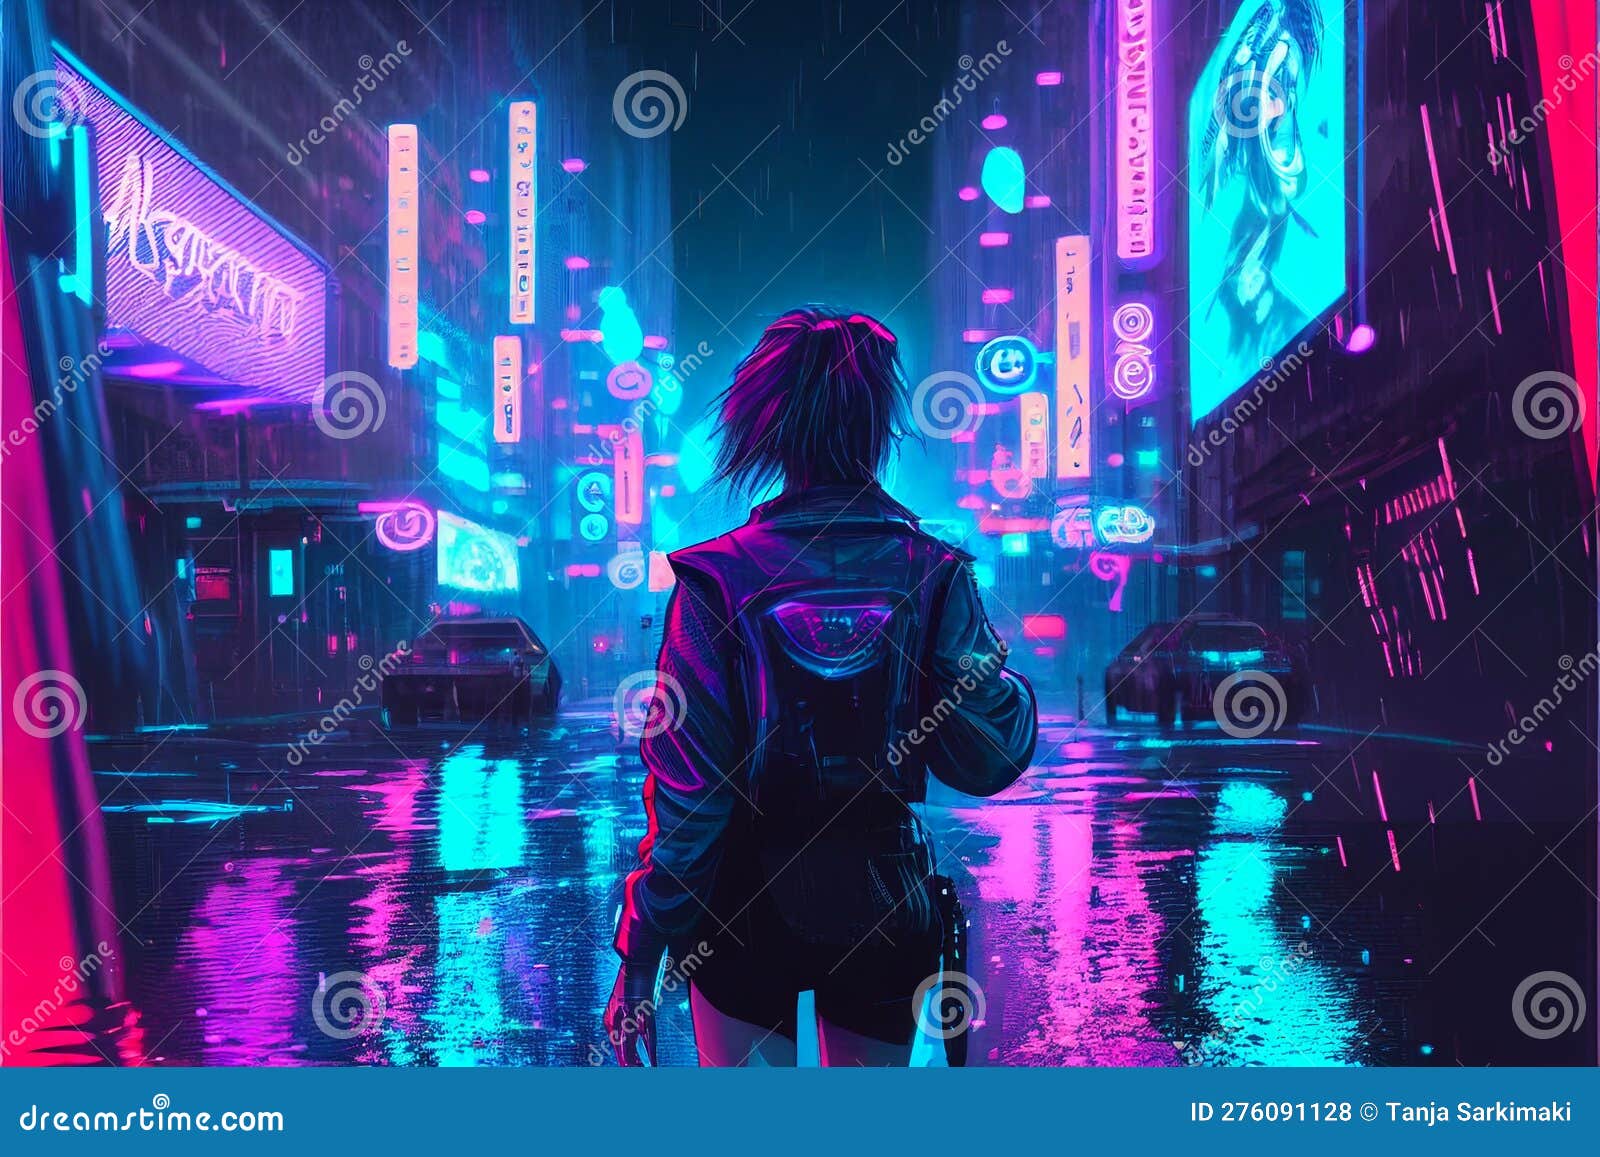 Ilustração de garota anime cyberpunk